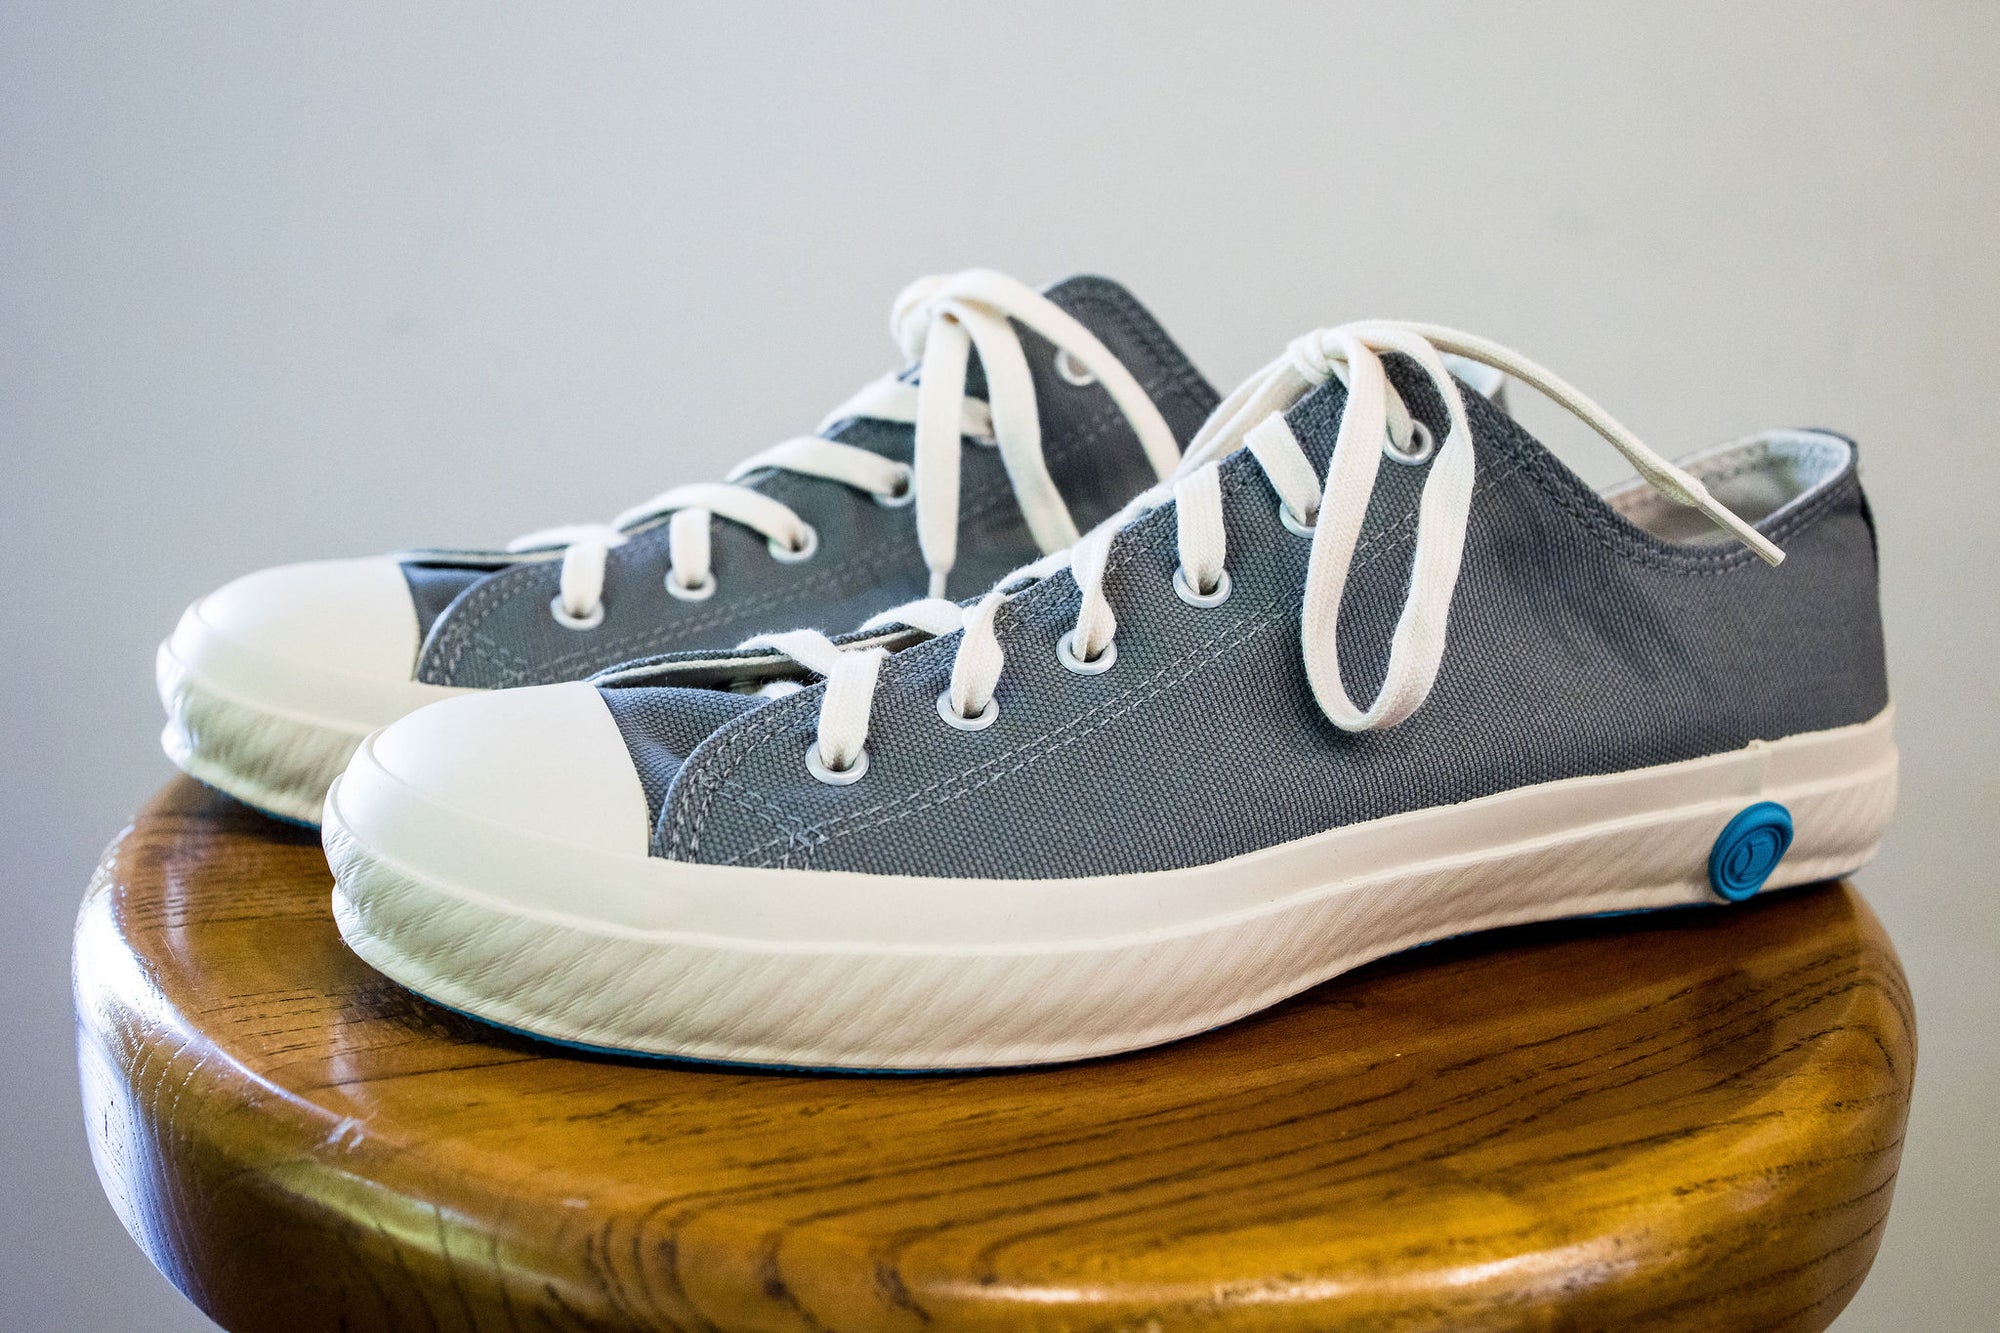 Shoes Like Pottery SLP01 JP Low Top Sneaker- Grey